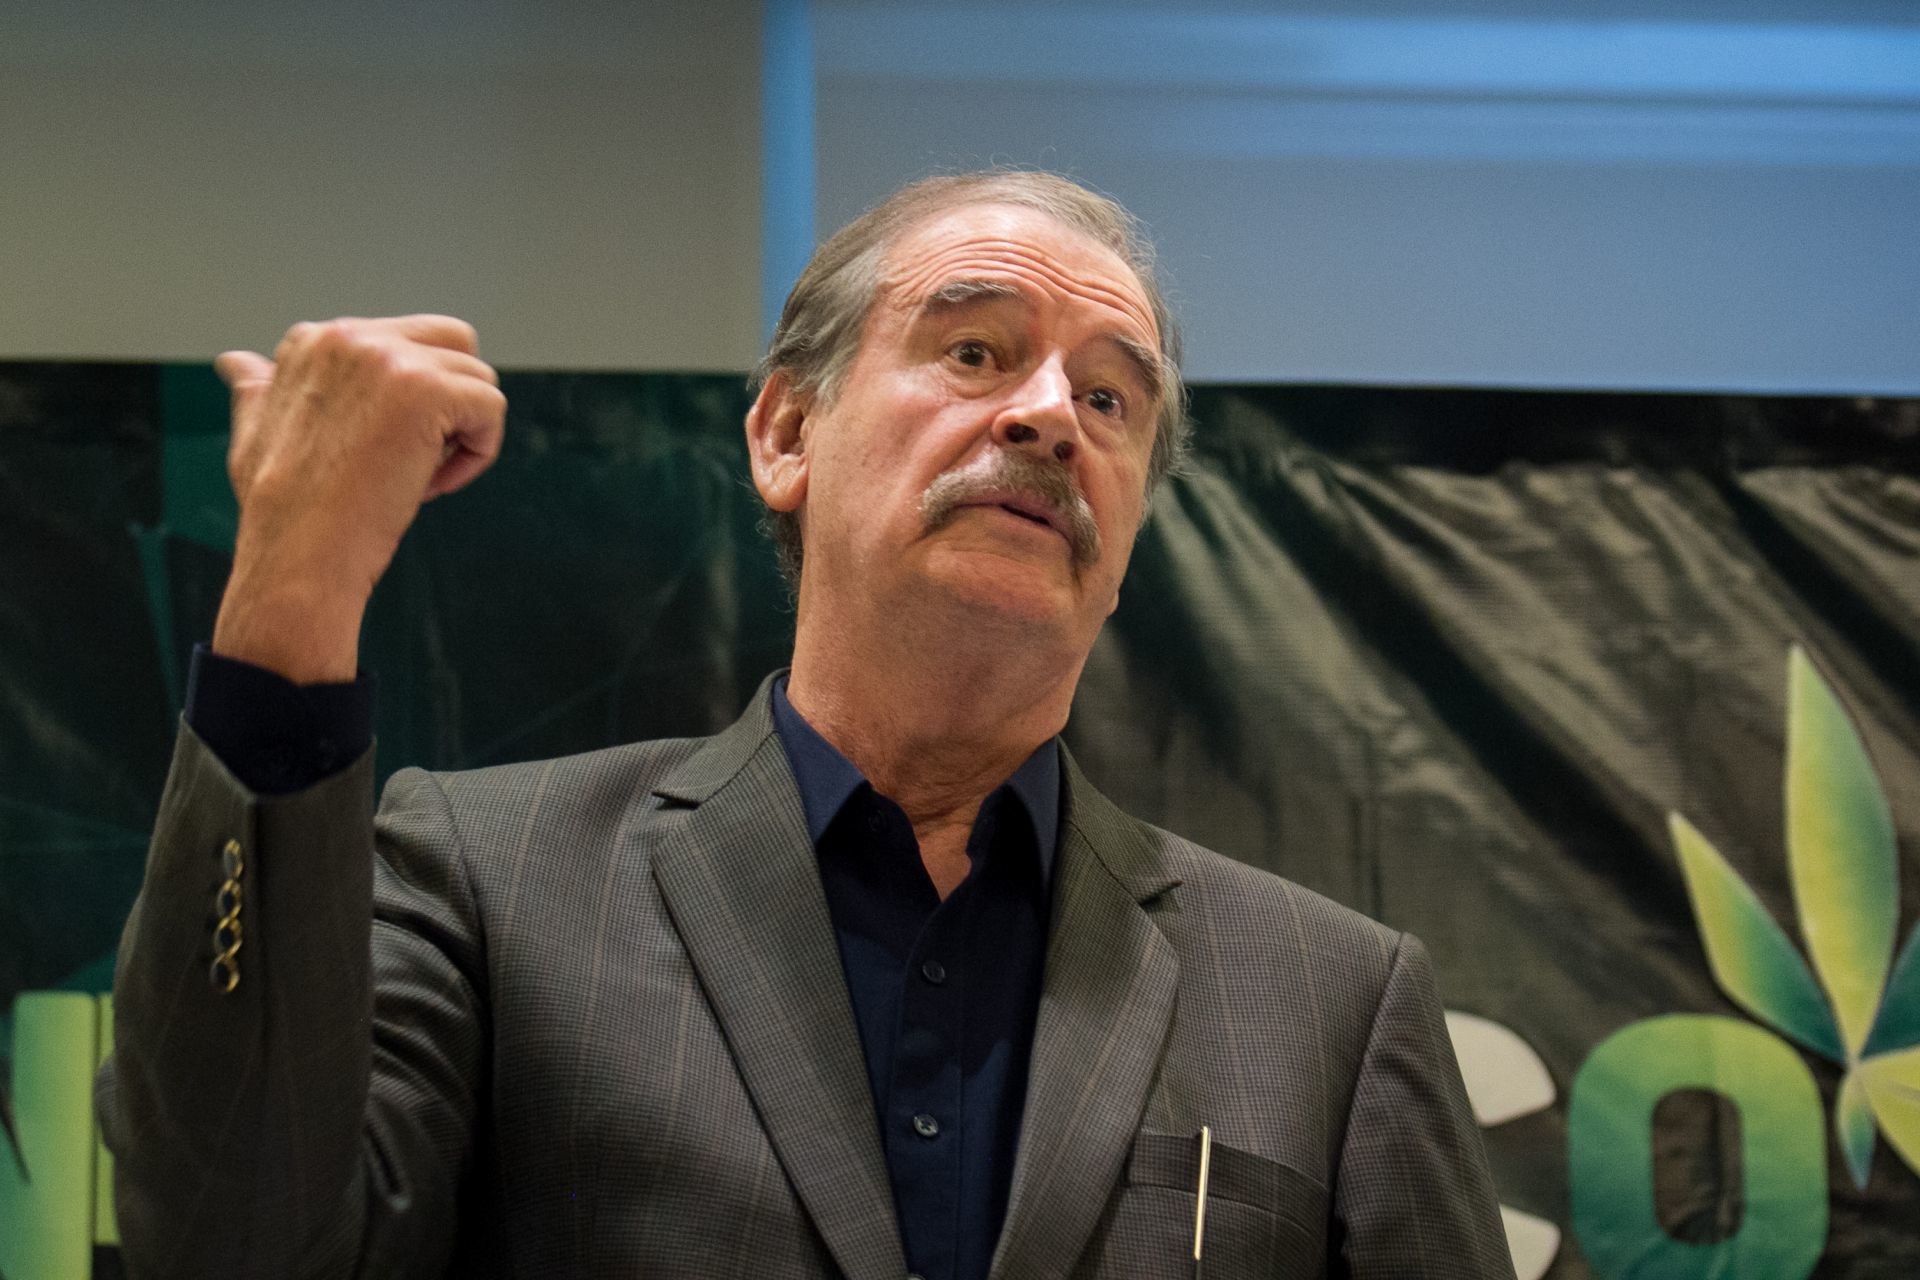 Vicente Fox, en la mira por supuestos permisos para comercializar cannabis